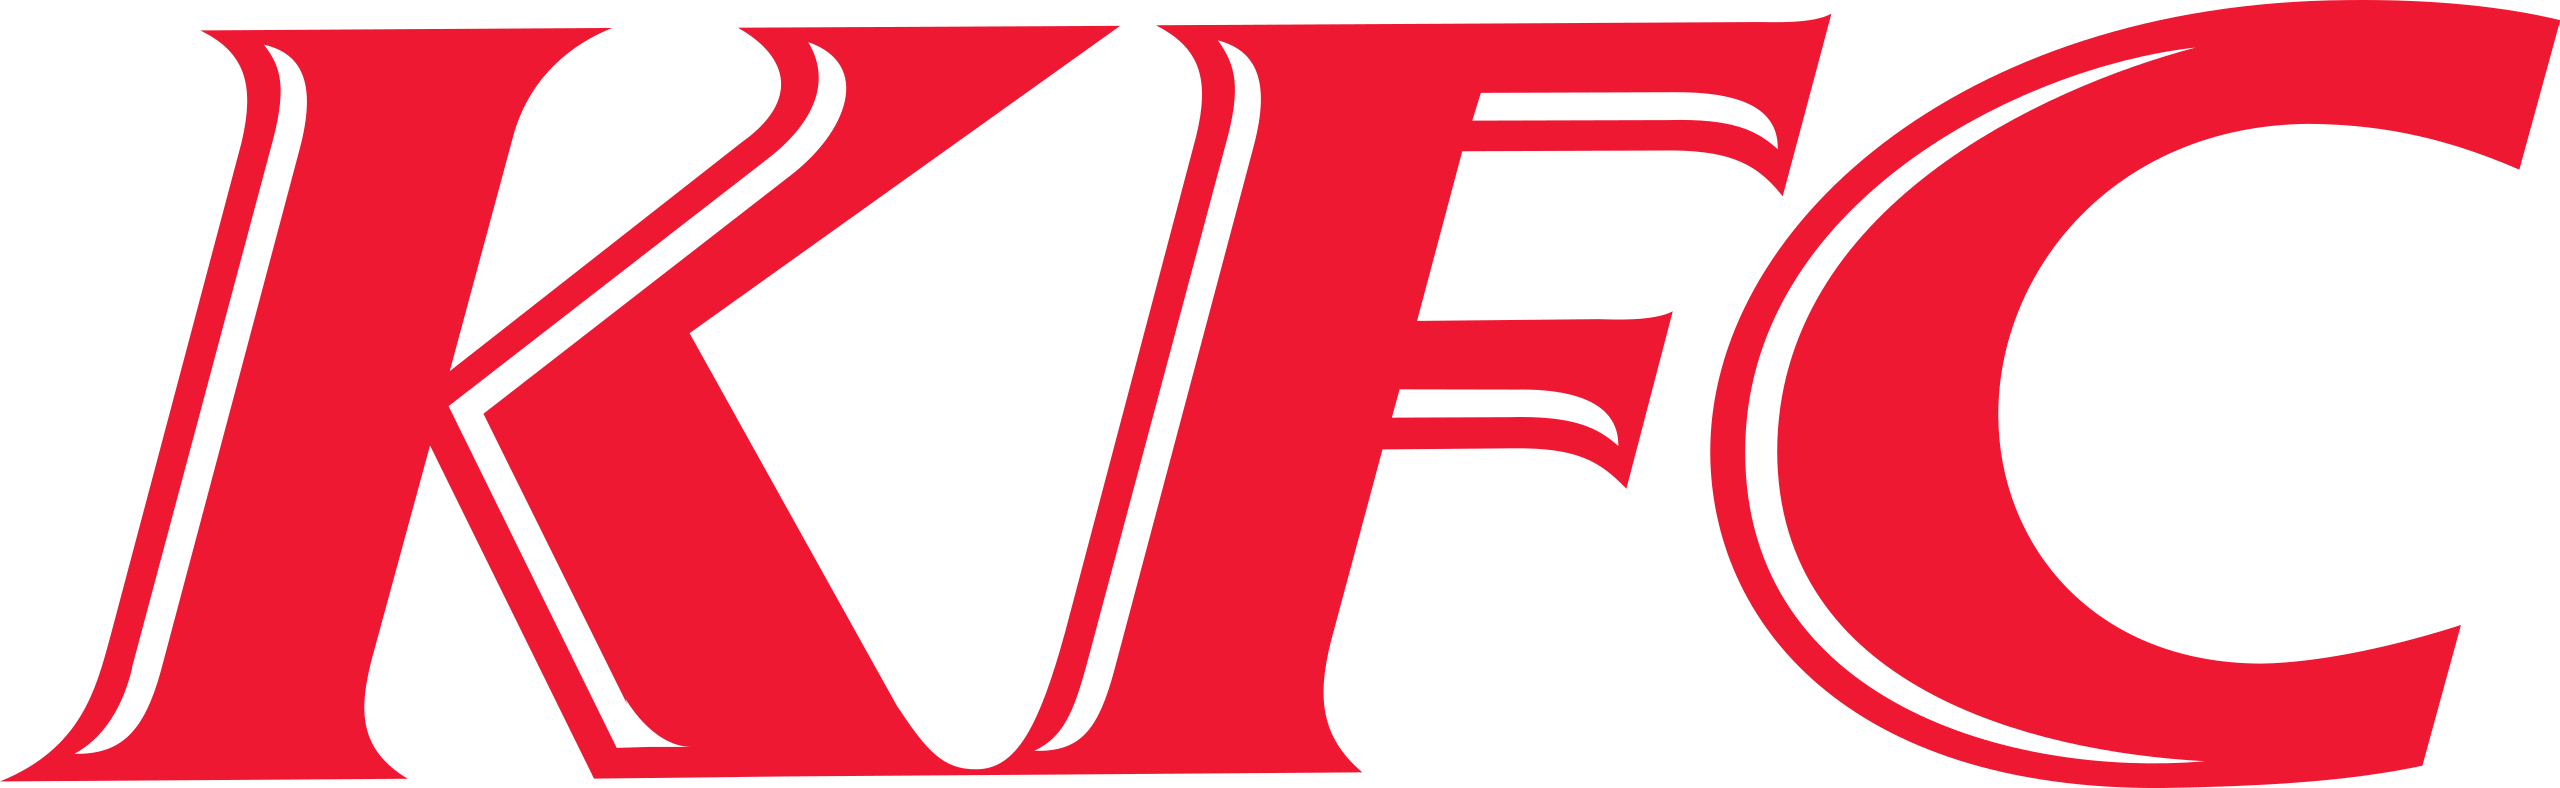 KFC_Logo.svg